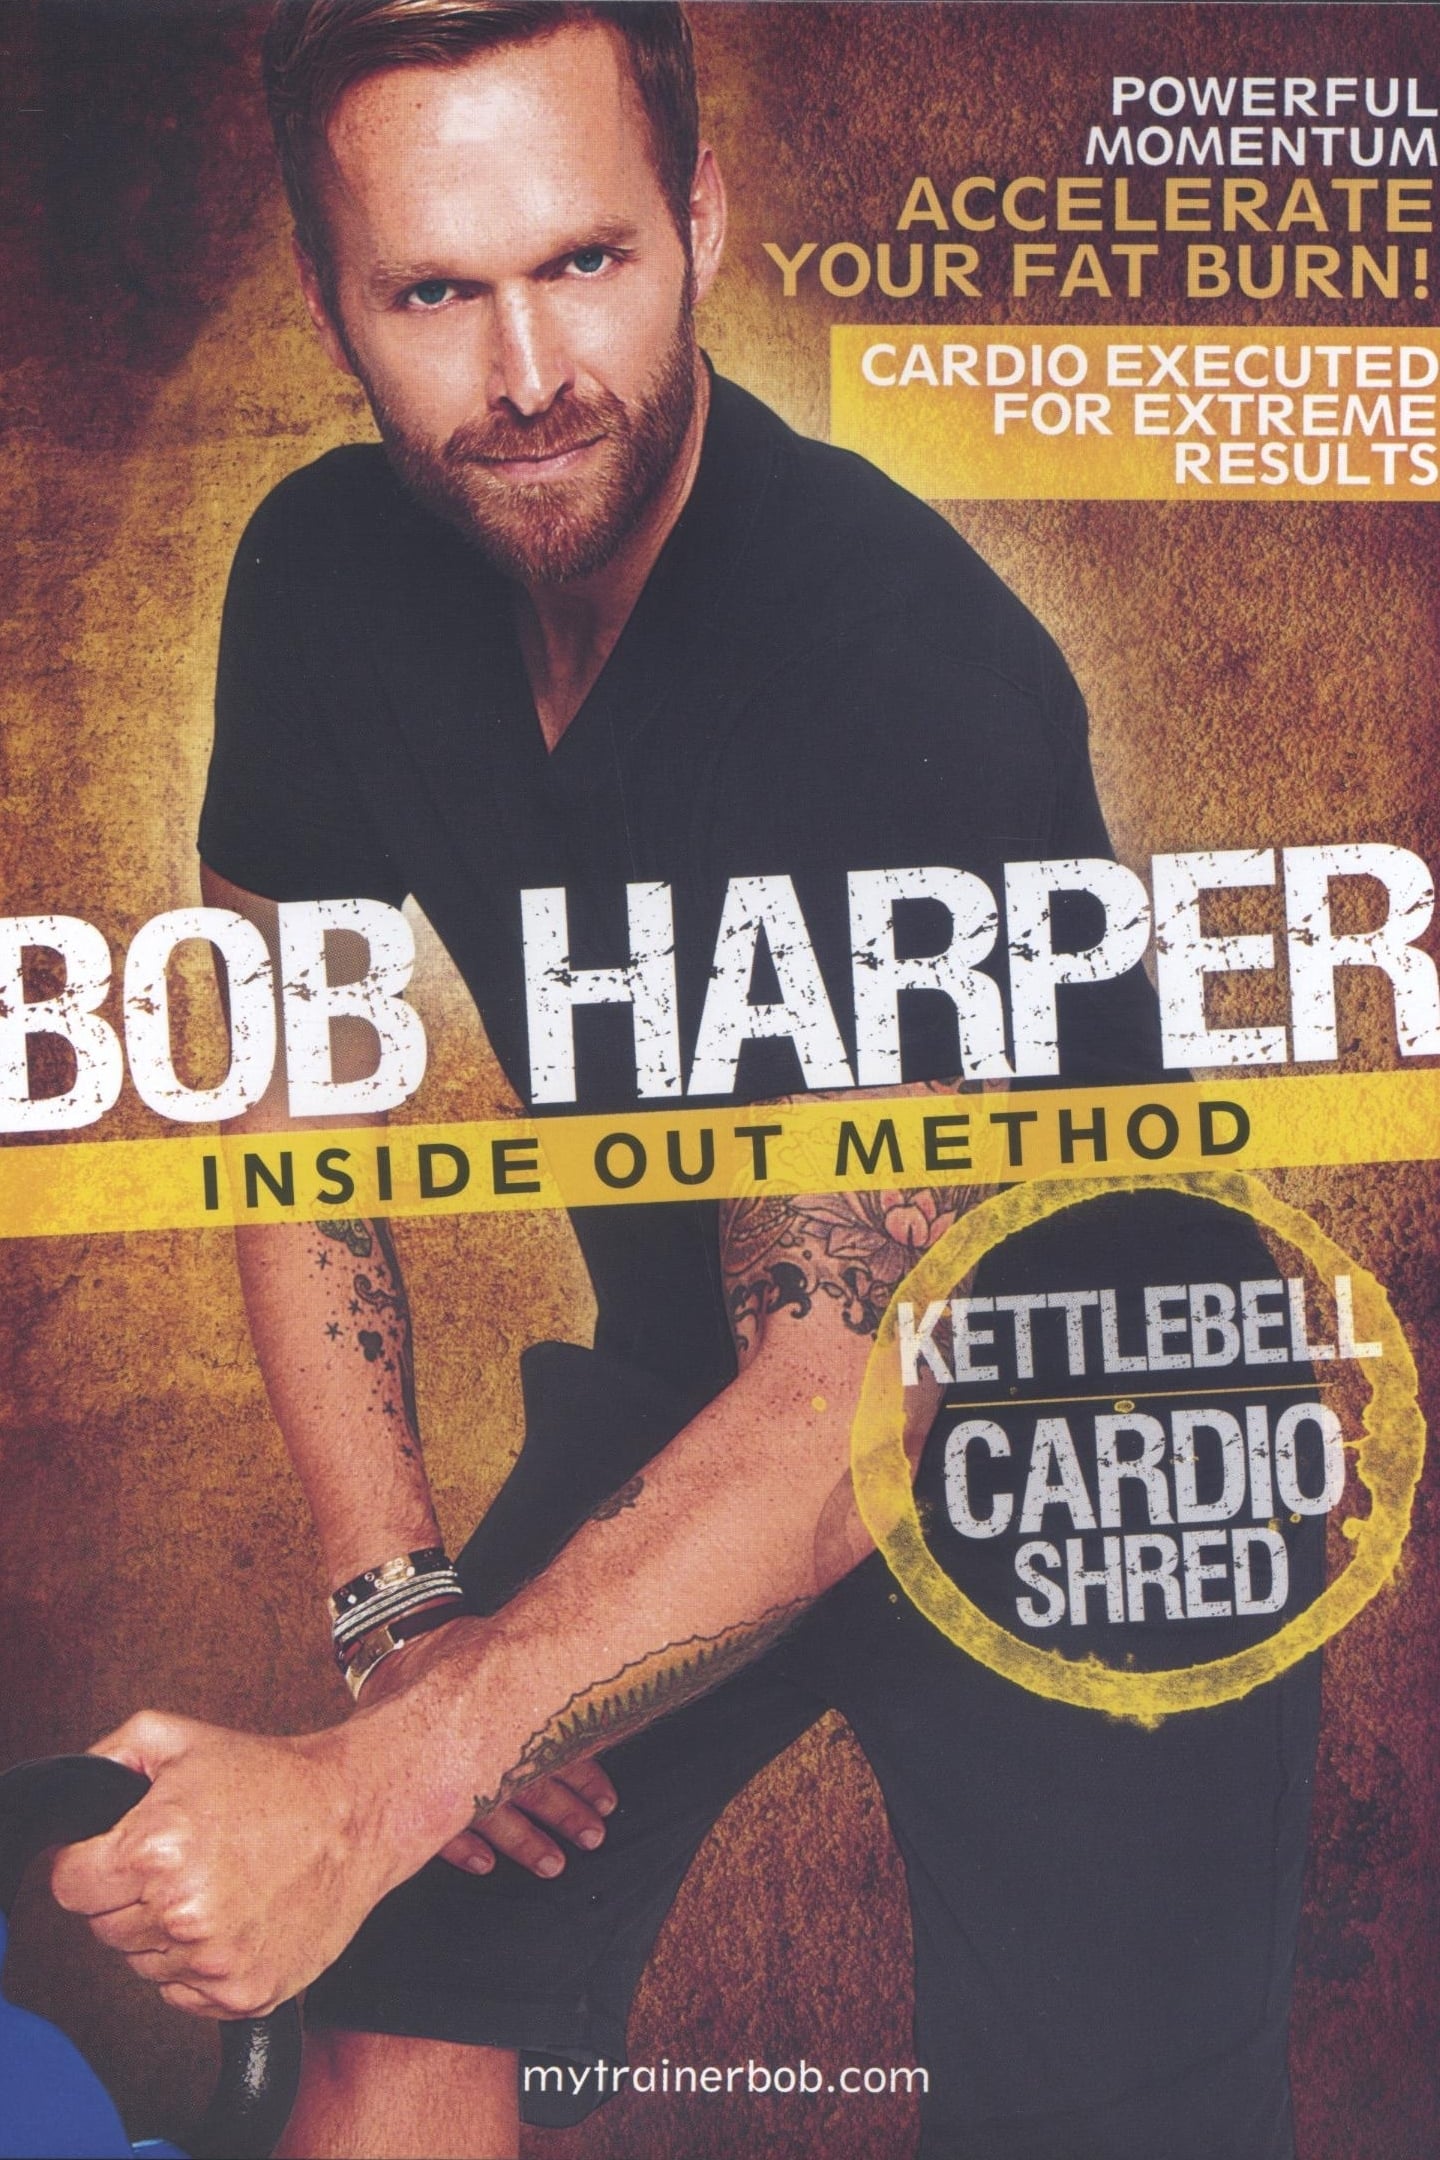 Bob Harper: Inside Out Method - Kettlebell Cardio Shred